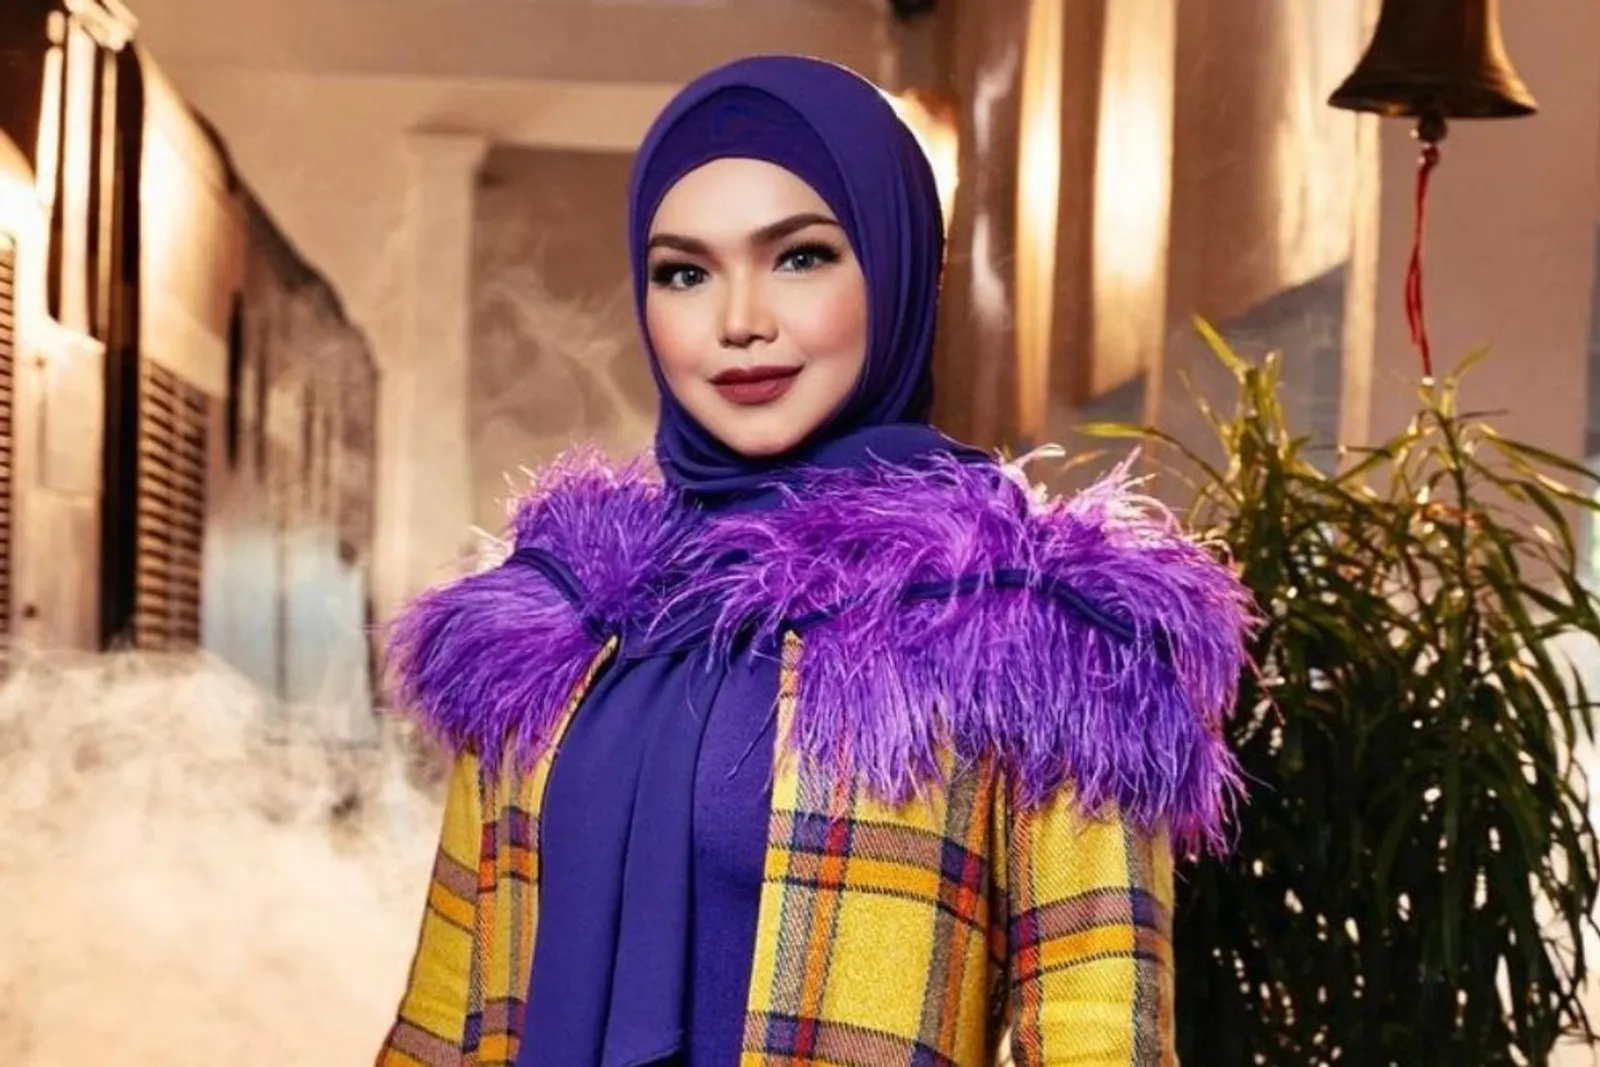 Potret Terbaru Siti Nurhaliza, Diva Malaysia yang Baru Saja Melahirkan